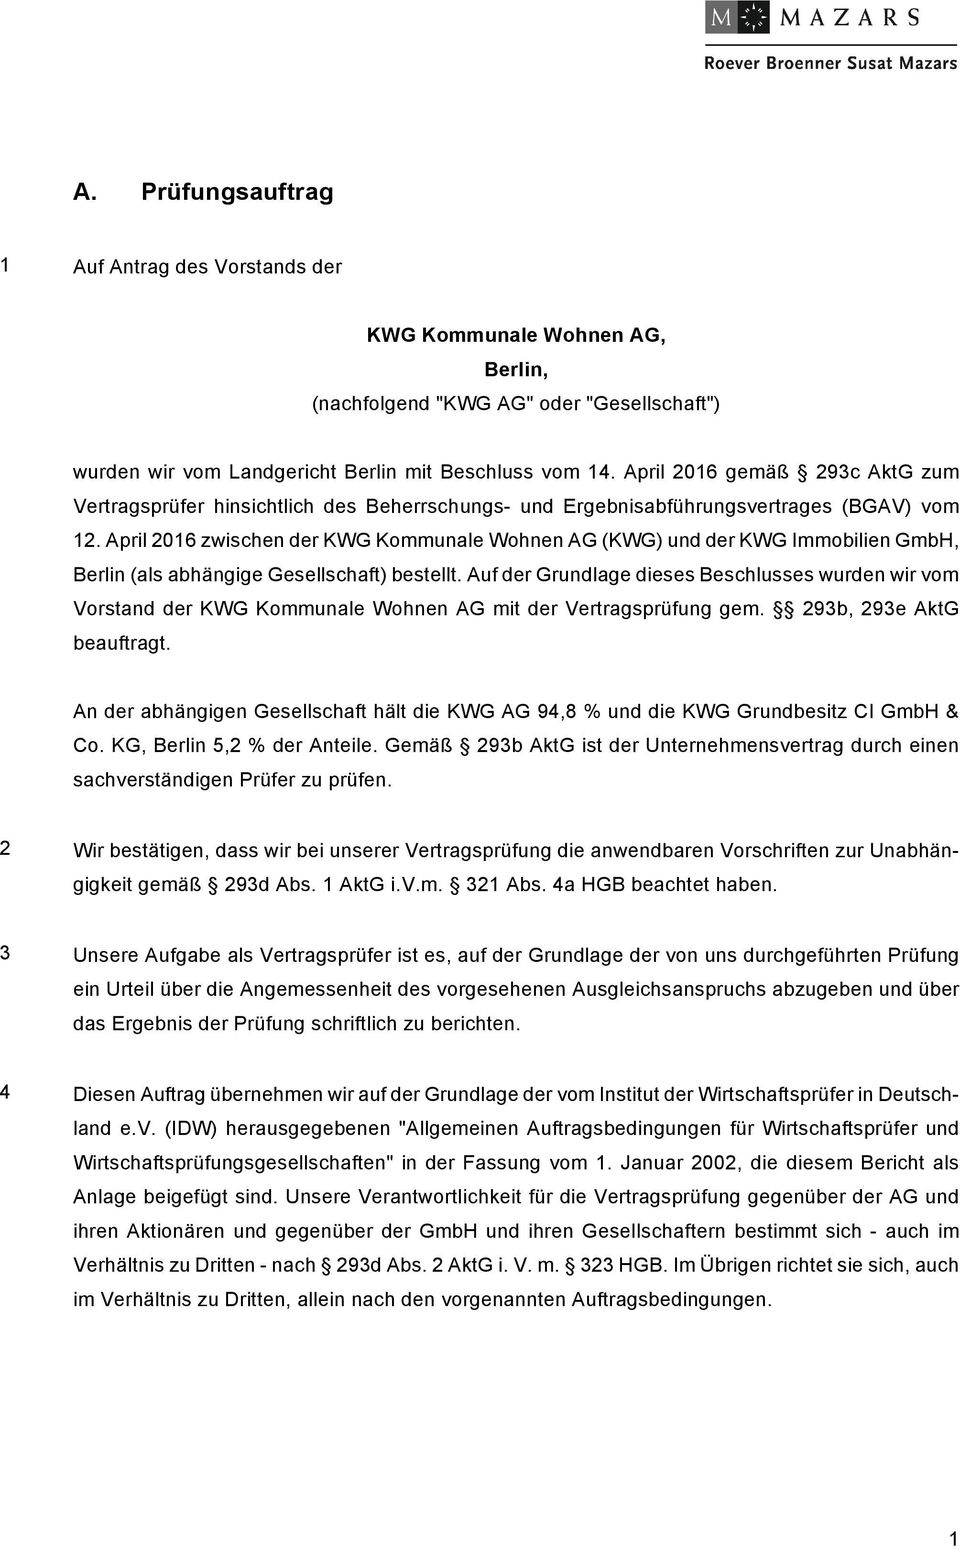 April 2016 zwischen der KWG Kommunale Wohnen AG (KWG) und der KWG Immobilien GmbH, Berlin (als abhängige Gesellschaft) bestellt.